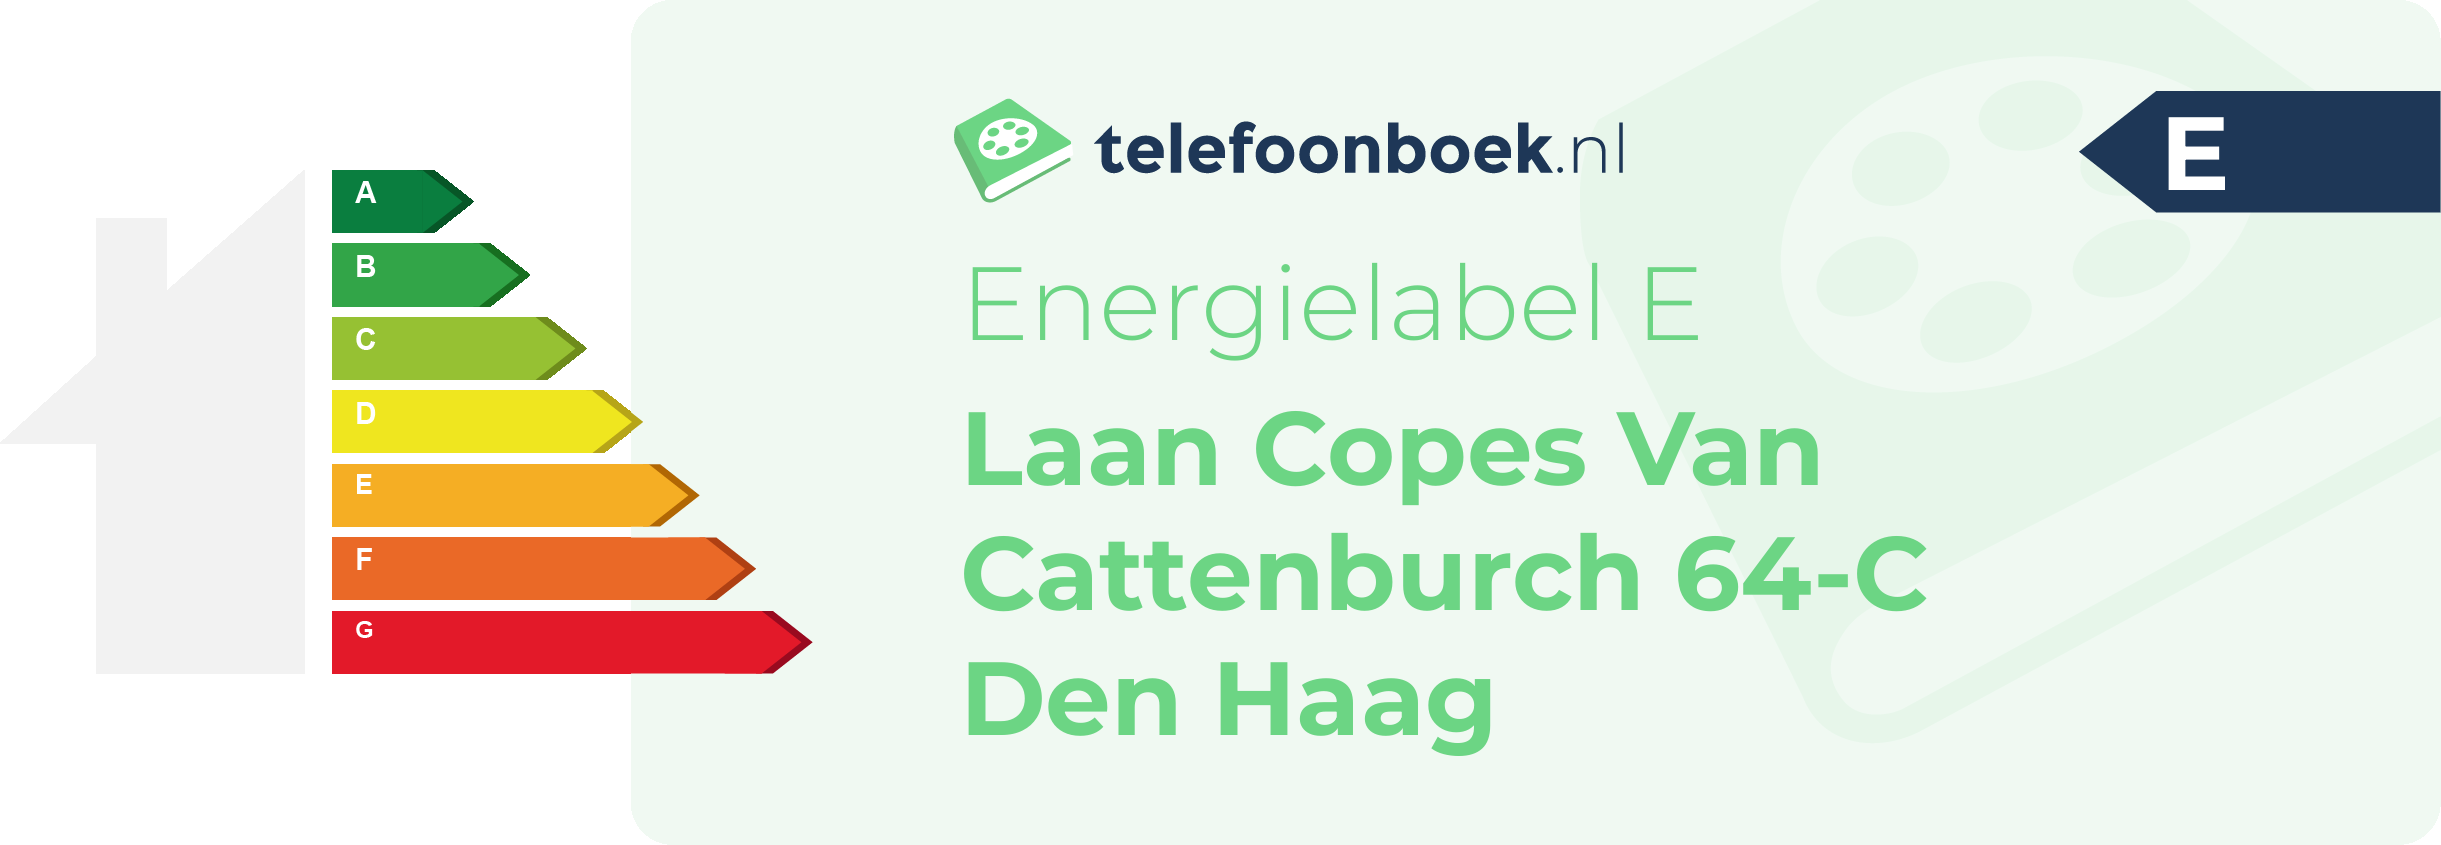 Energielabel Laan Copes Van Cattenburch 64-C Den Haag